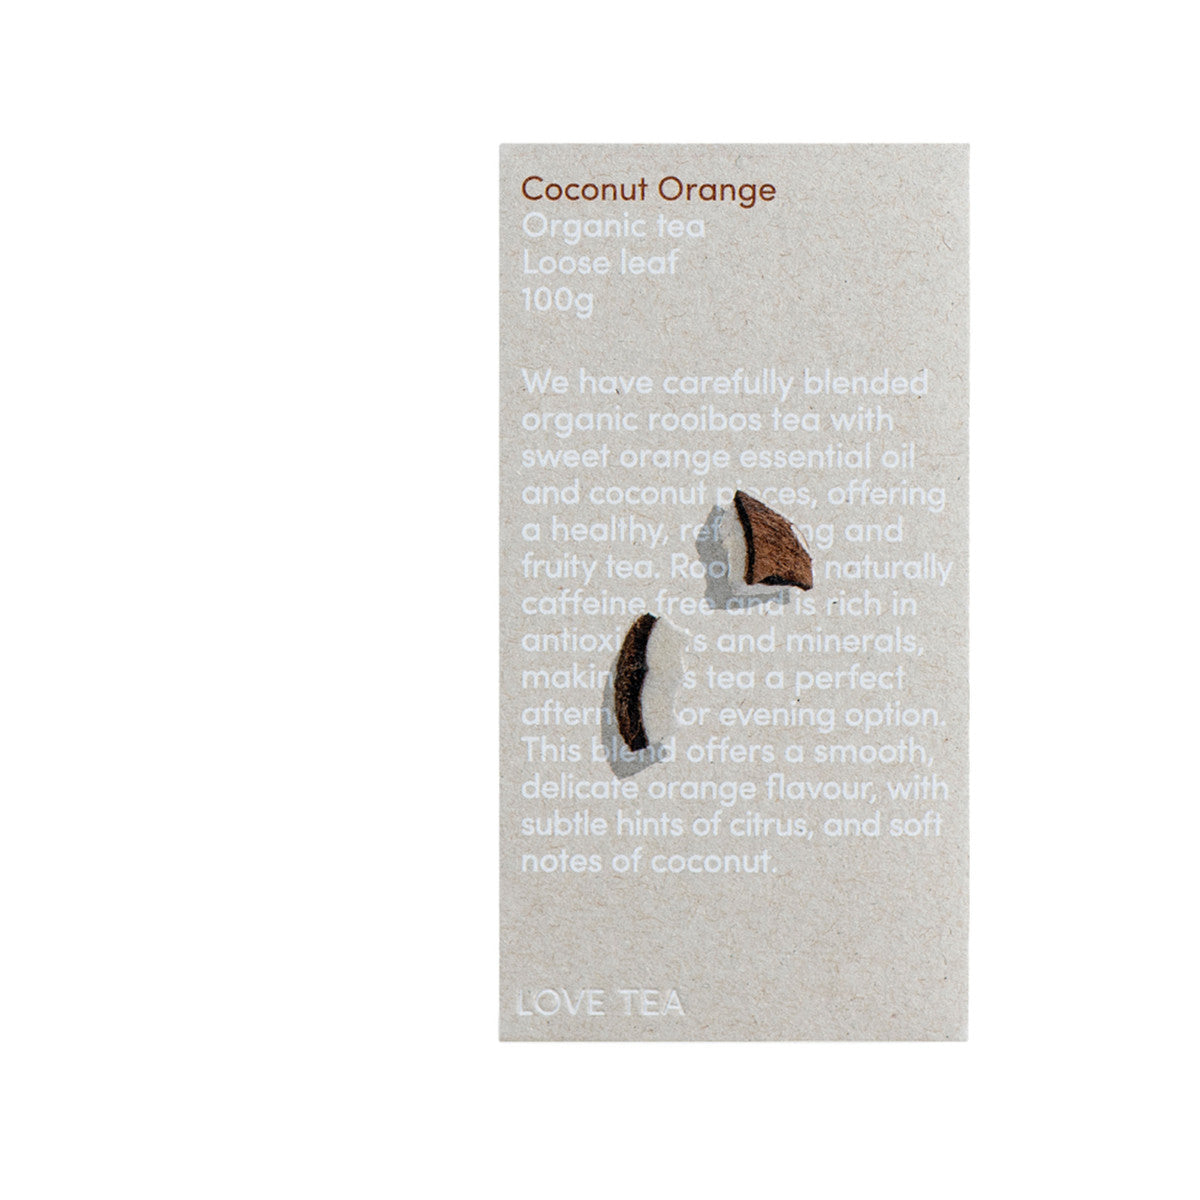 Love Tea - Organic Coconut Orange Loose Leaf